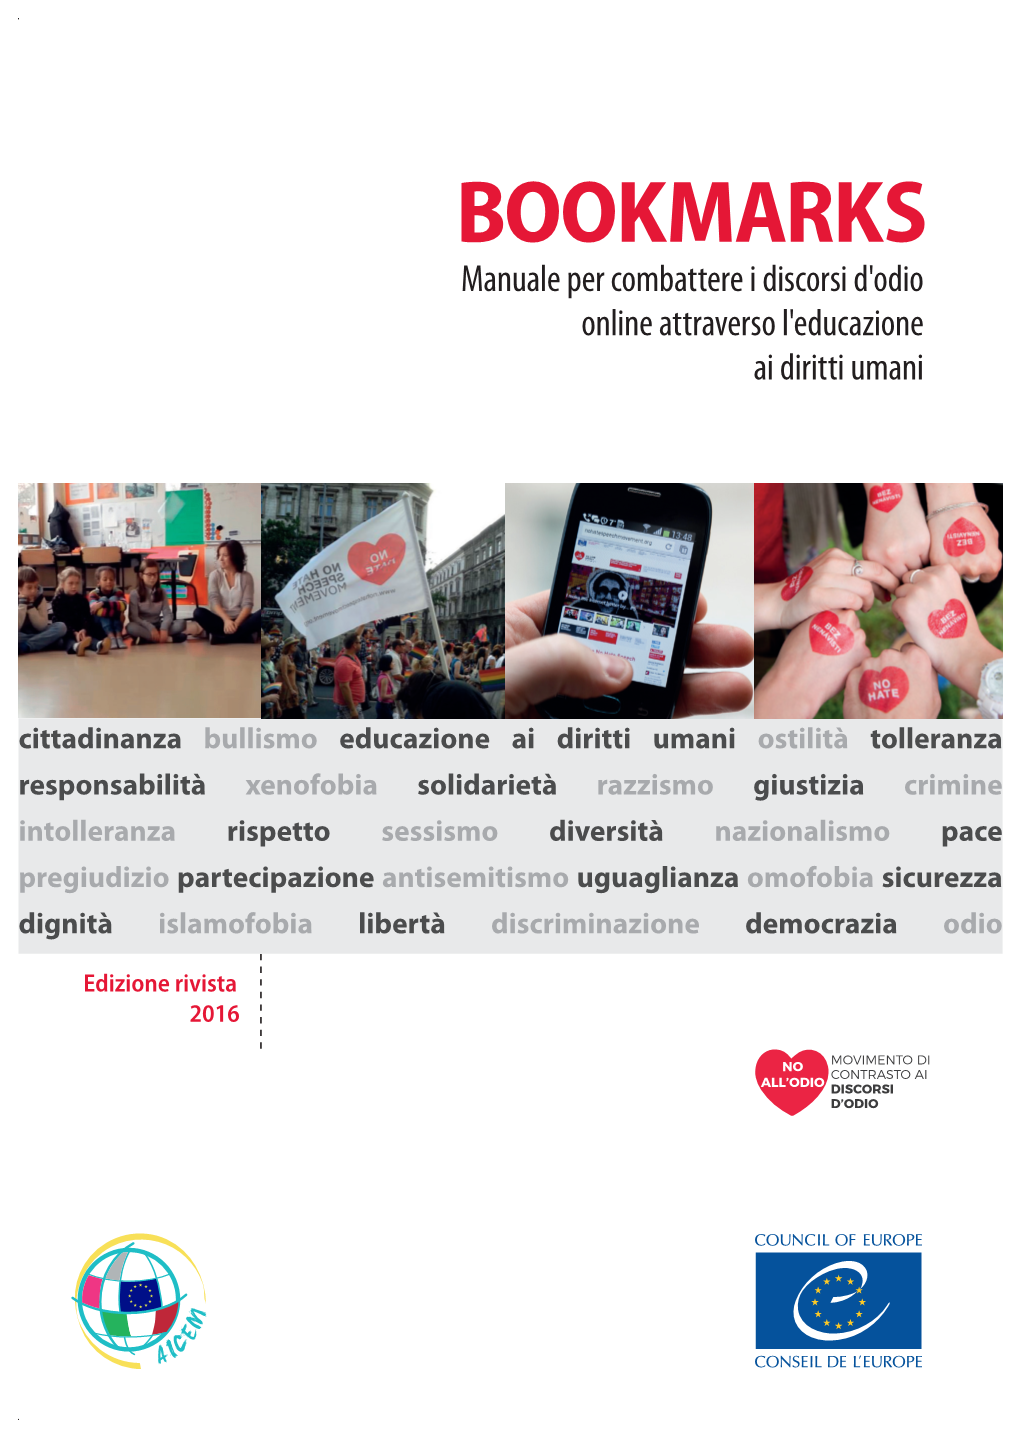 Bookmarks - Manuale Per Combatterebookmarks I Discorsi D'odio Online Attraverso L'educazione Ai Diritti Umani BOOKMARKS